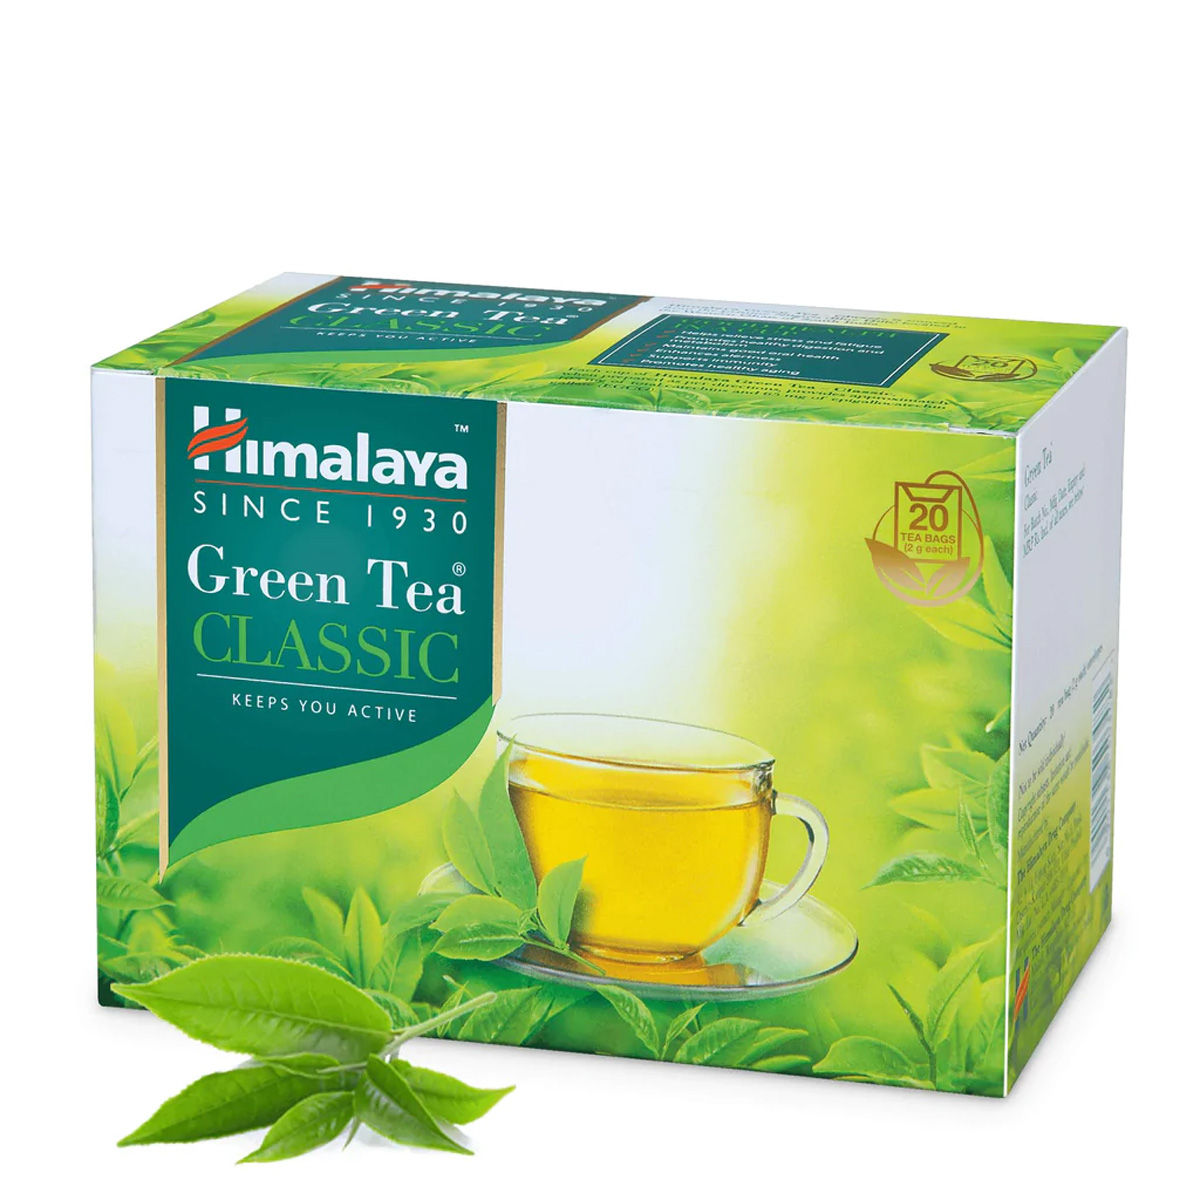 Himalaya Green Tea Bags, 10 Count, Pack of 1 